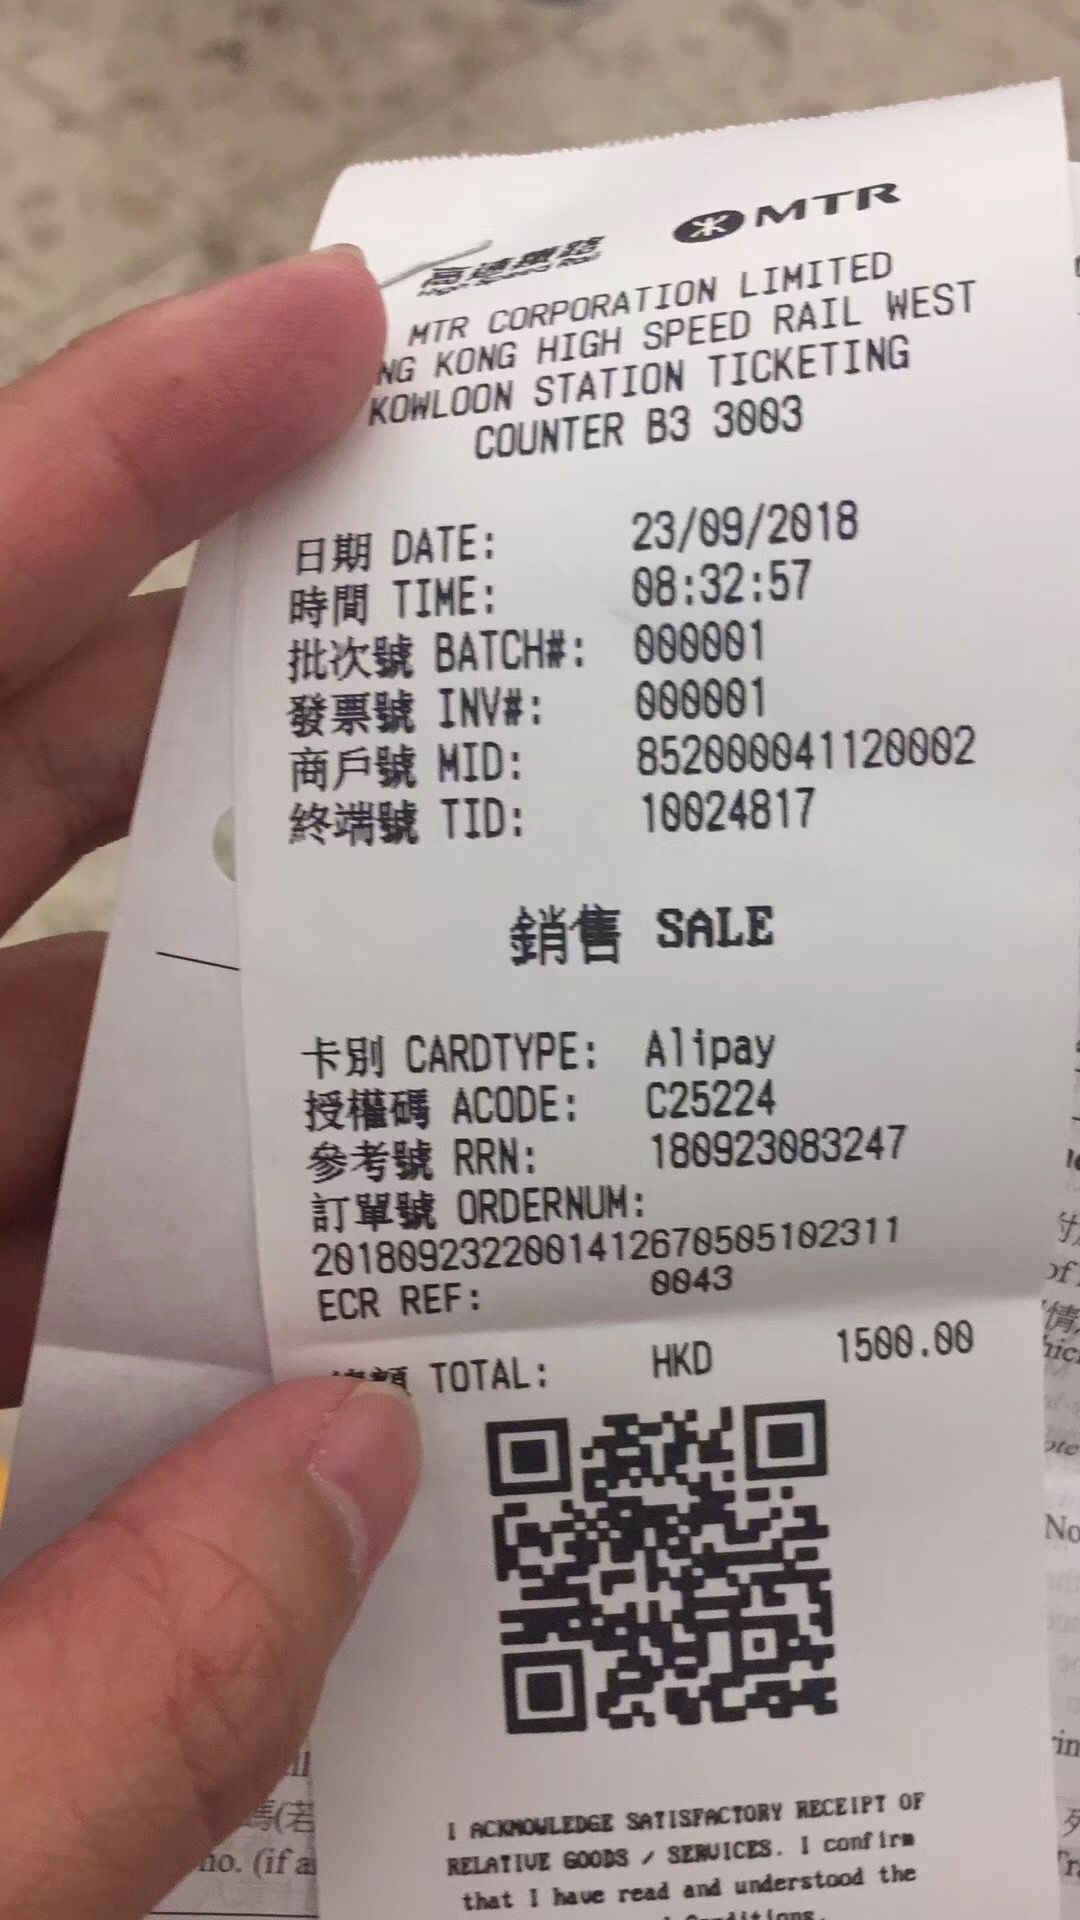 香港段高铁开出首张罚单 深圳乘客无票被罚1500